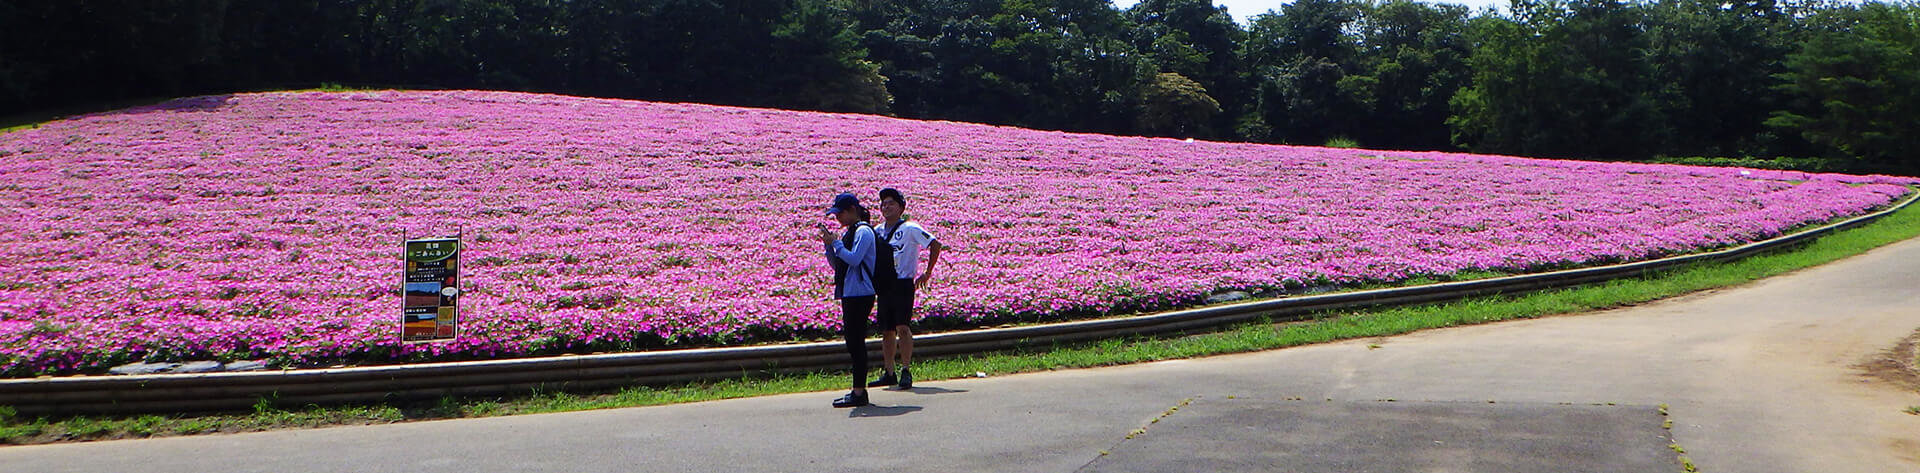 この写真は国営武蔵丘陵森林公園がピンク色のペチュニアで満開になっている状態。花の絨毯のよう